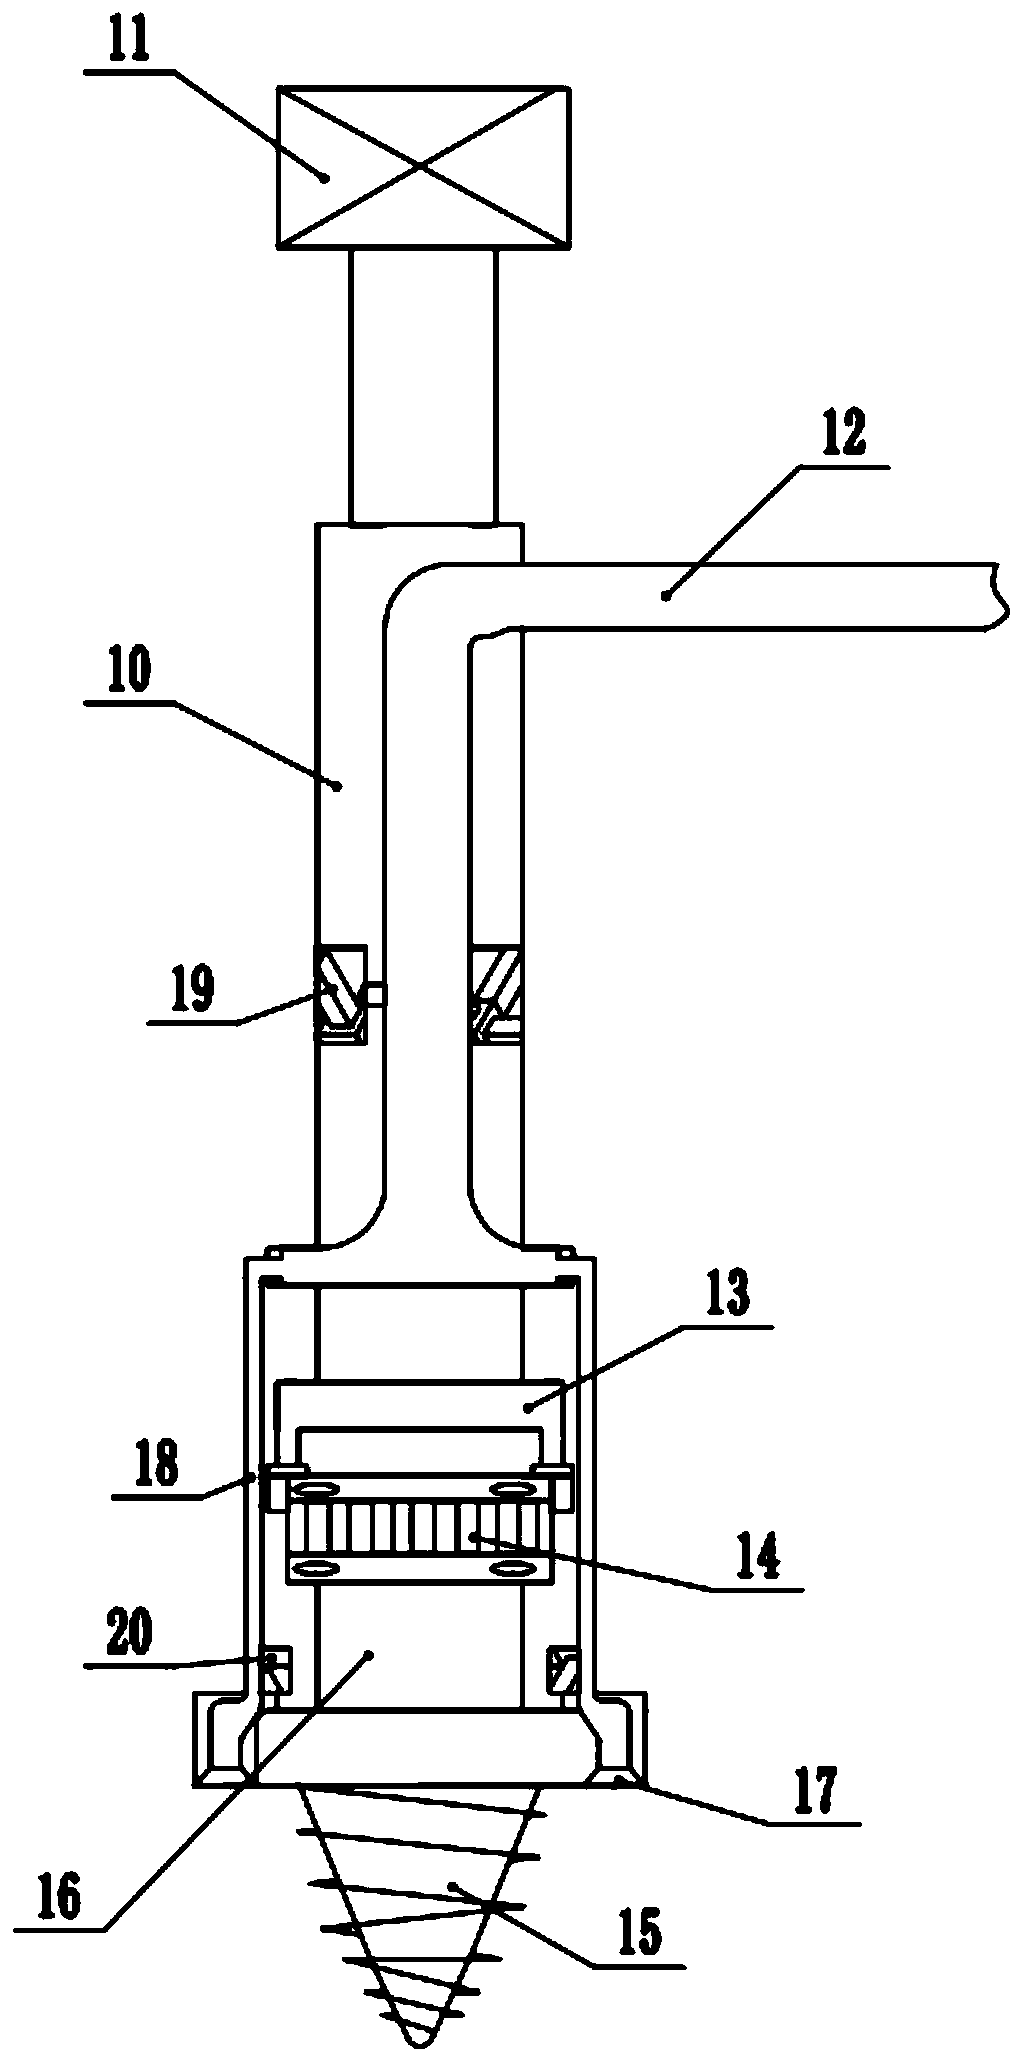 Rotary boring machine for prefabricated pipe pile machining